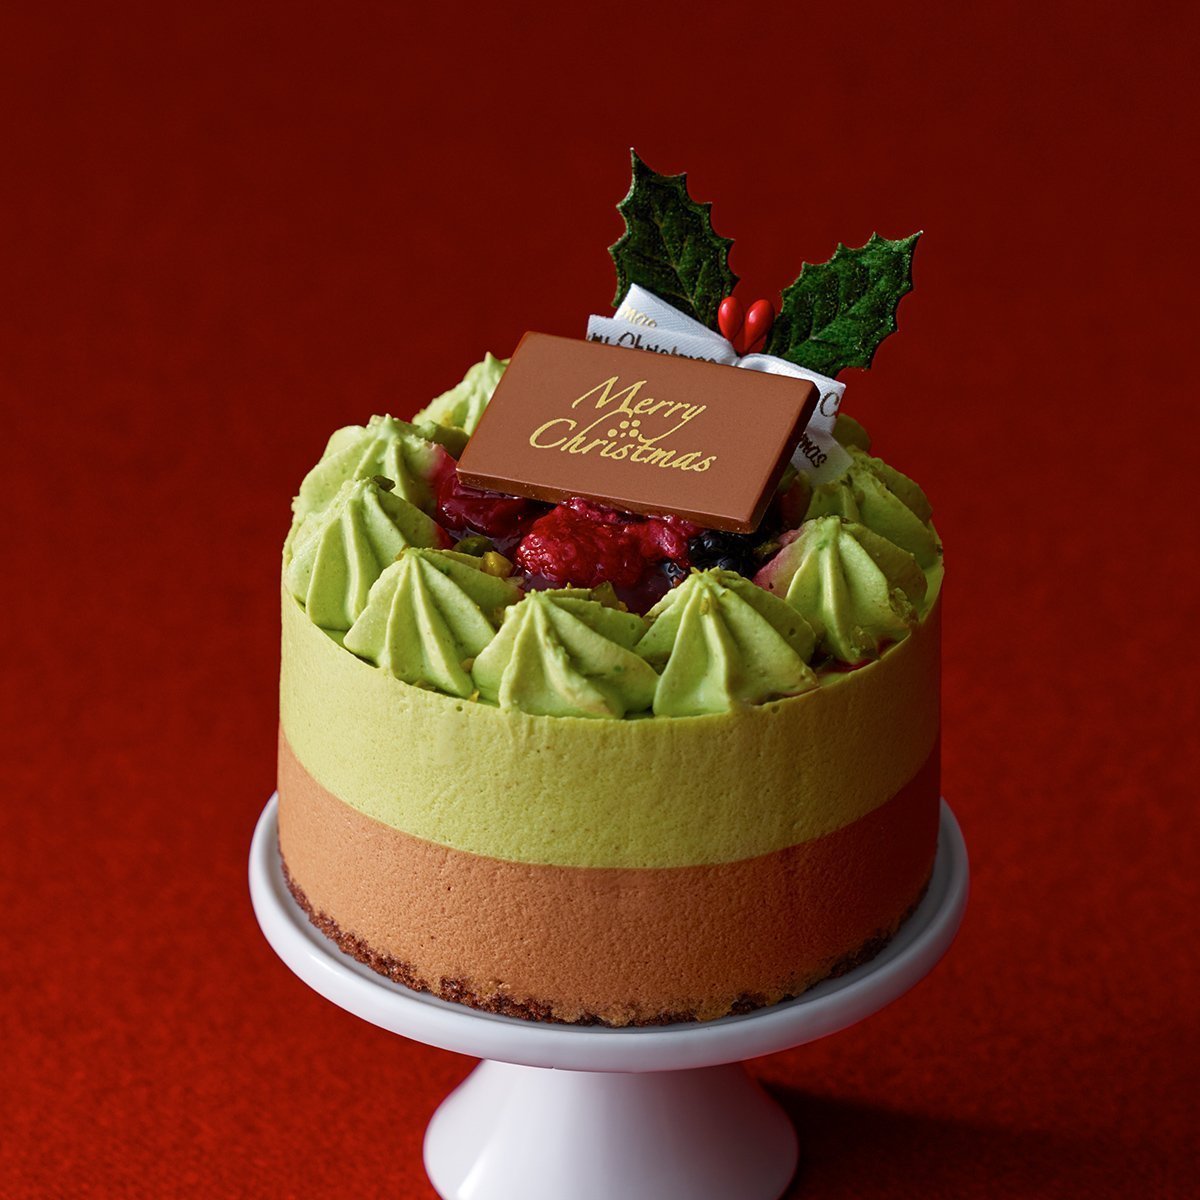 ルタオ Letao クリスマスケーキ サパン ド ノエル 3号直径9cm 1 2名用 チョコレートケーキ をネットで予約 クリスマスケーキ まだ 間に合う ネットで予約して配達まで